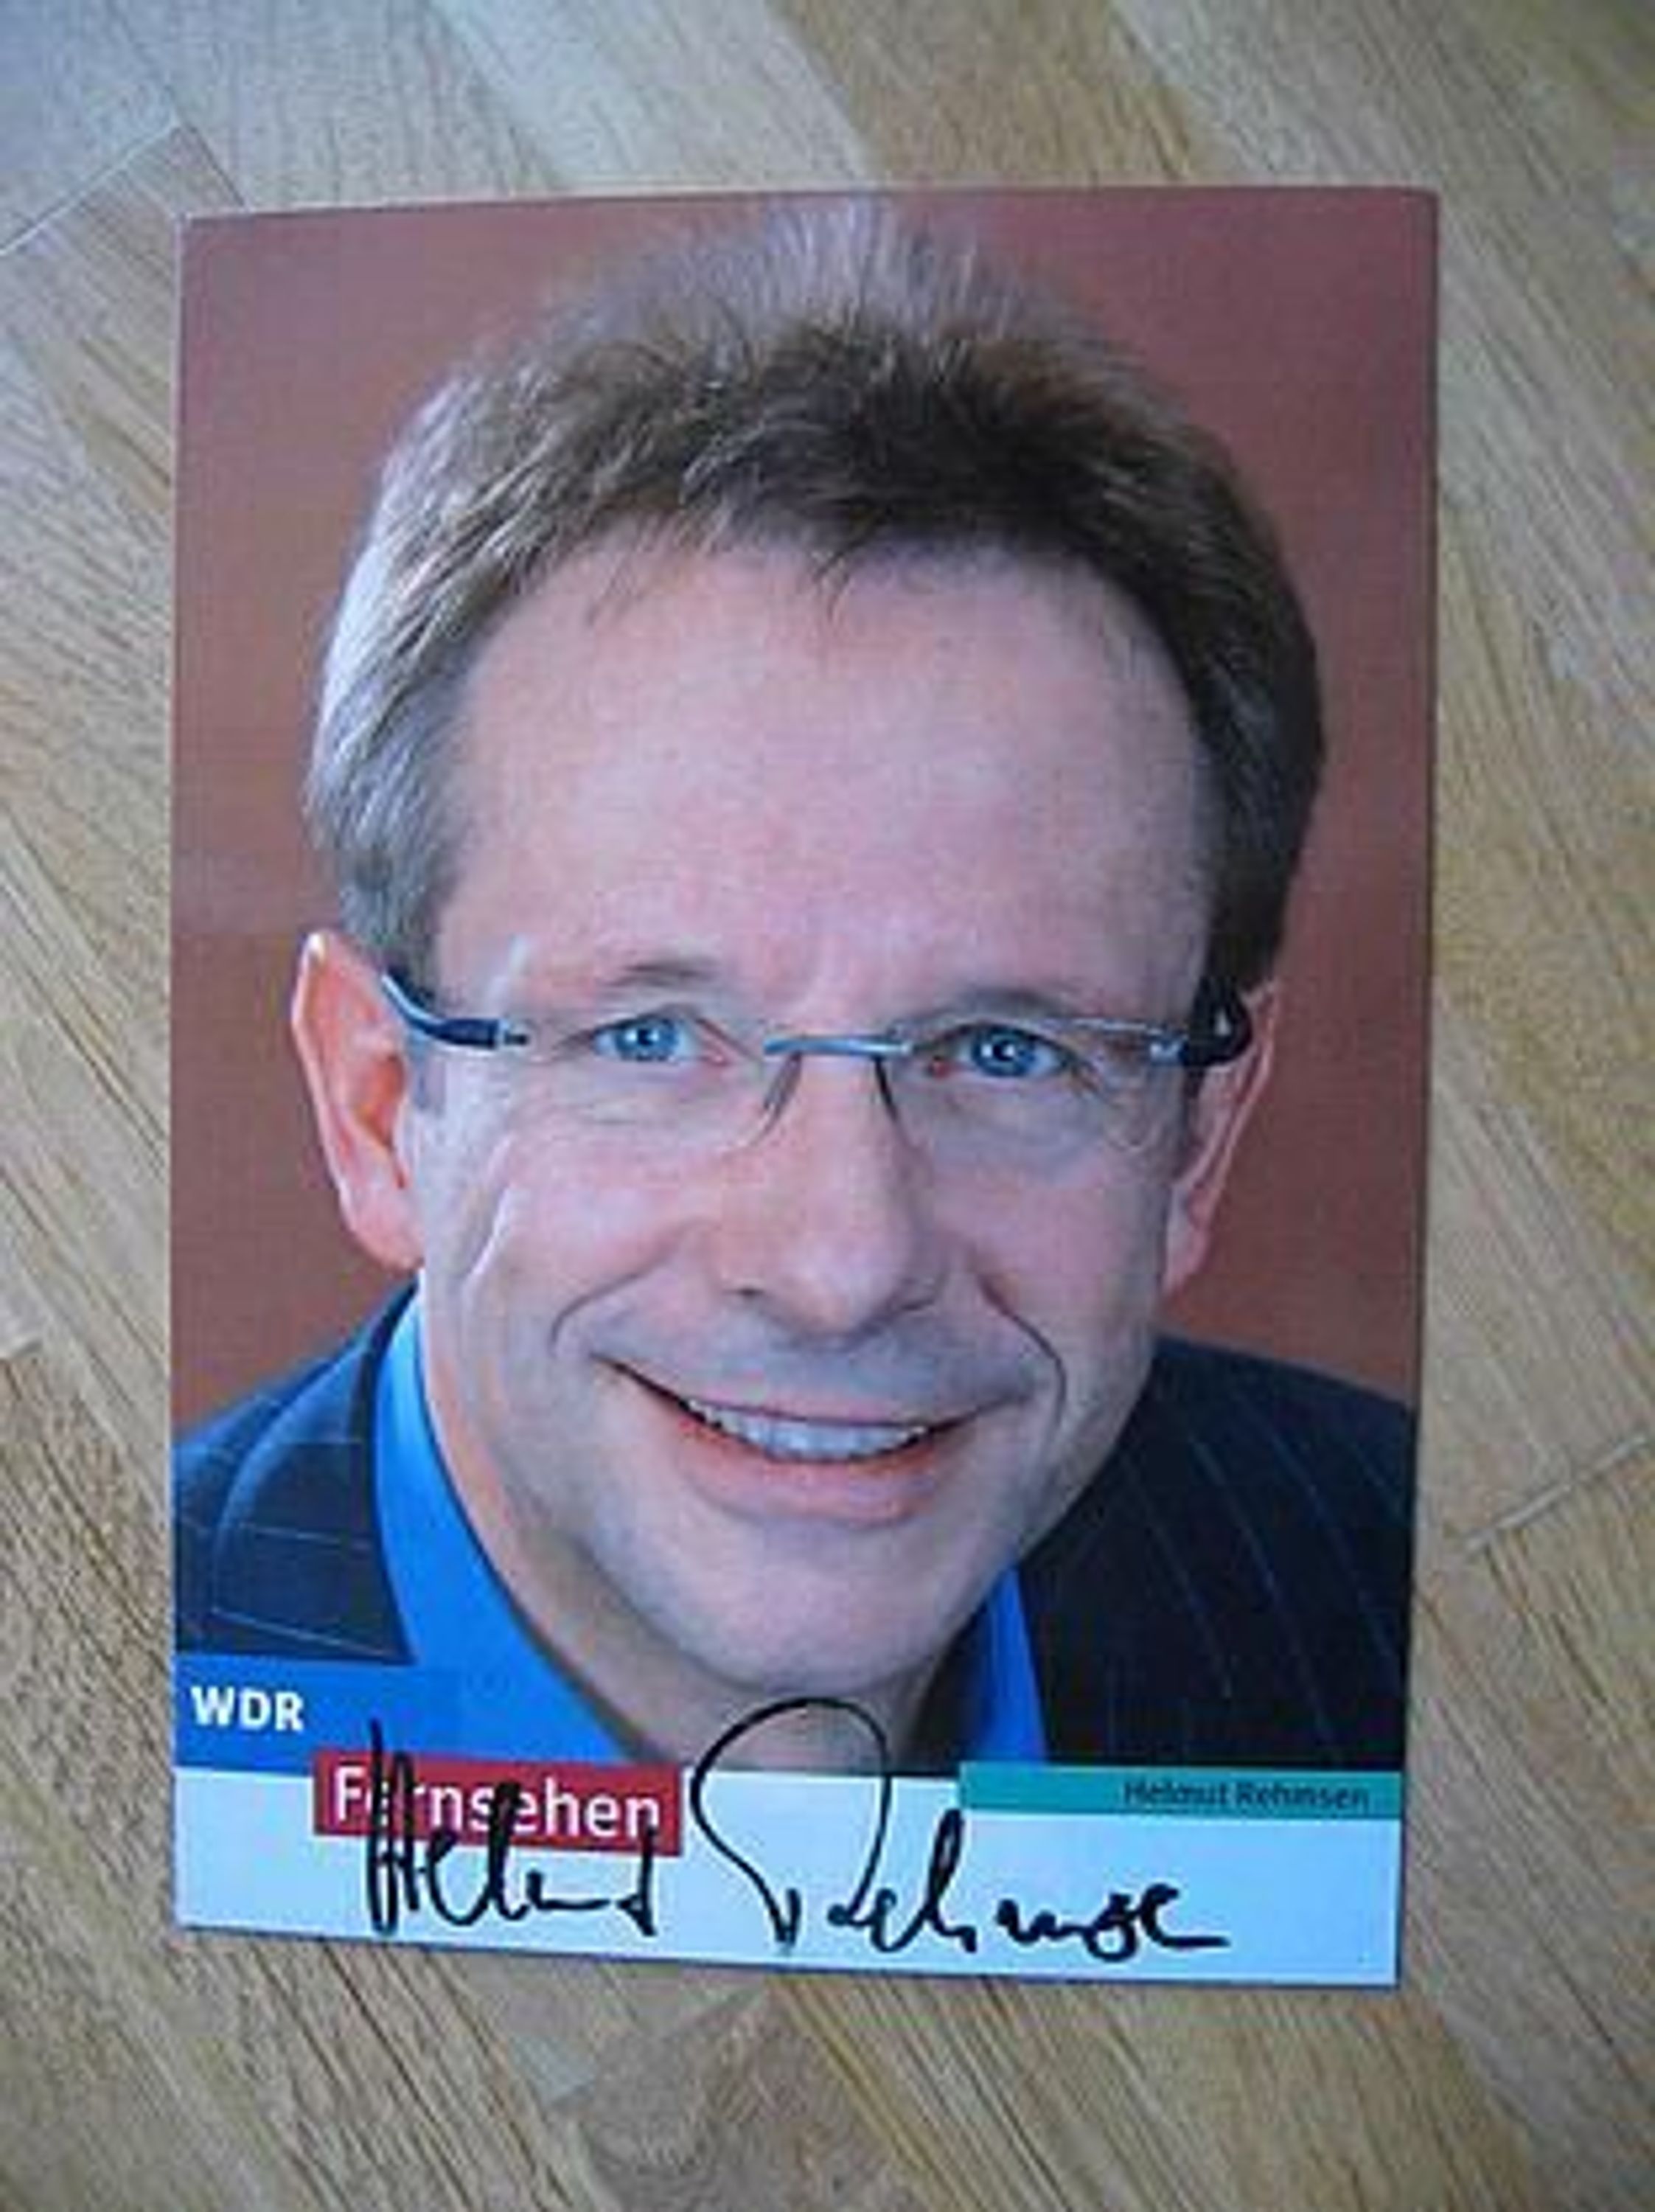 WDR Fernsehmoderator <b>Helmut Rehmsen</b> - Autogramm! - 14667842